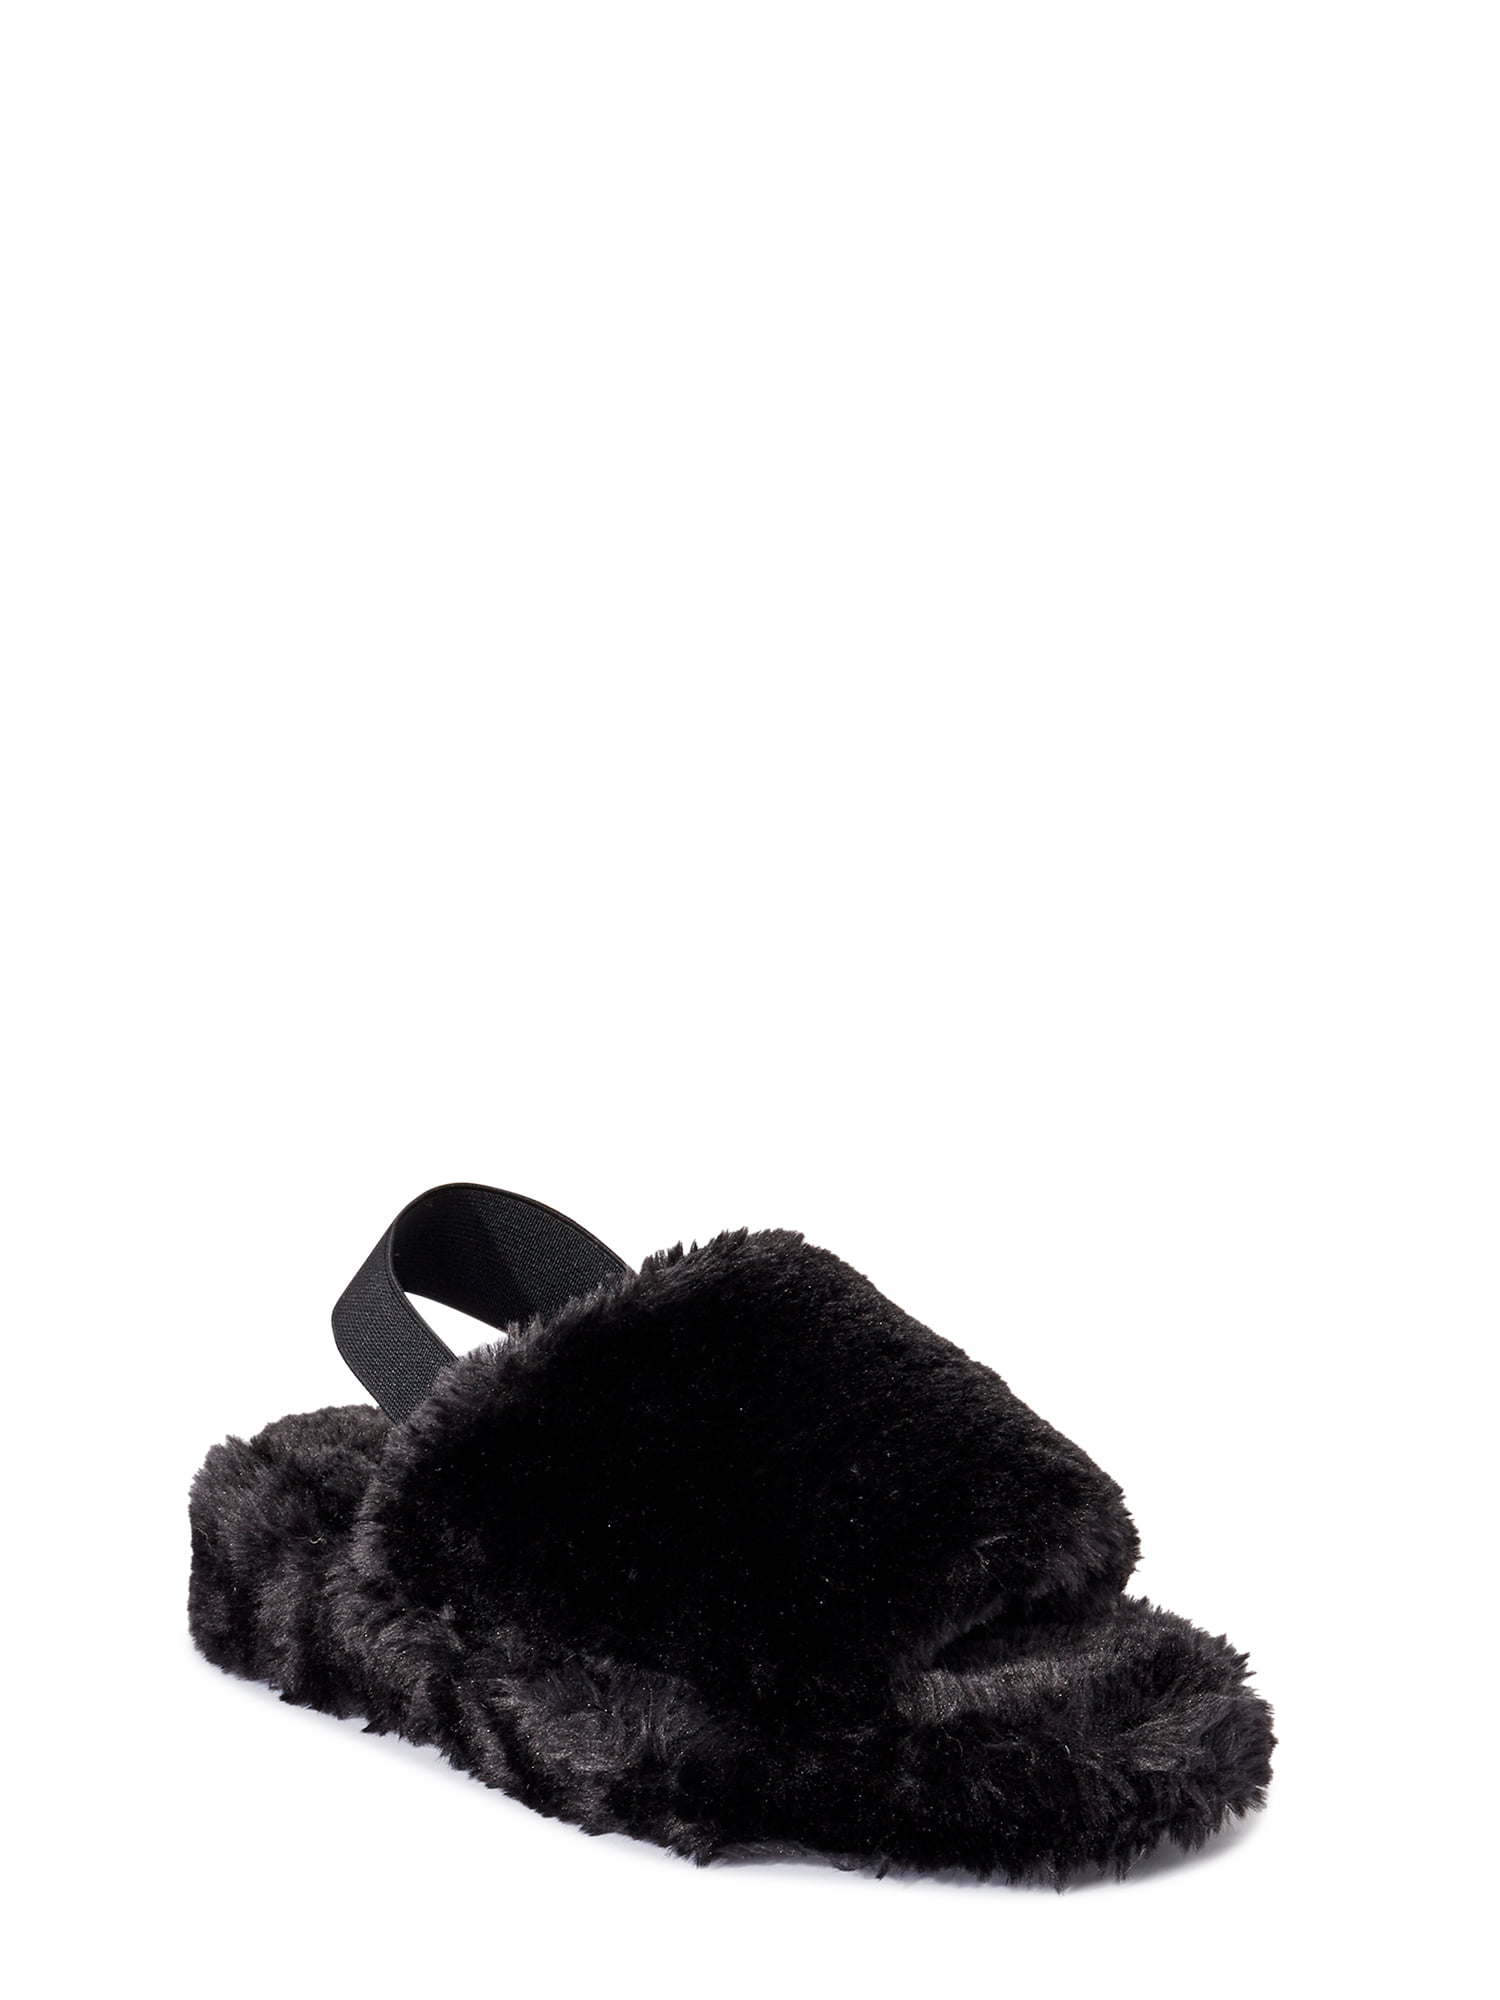 Buy > slingback fuzzy slippers > in stock